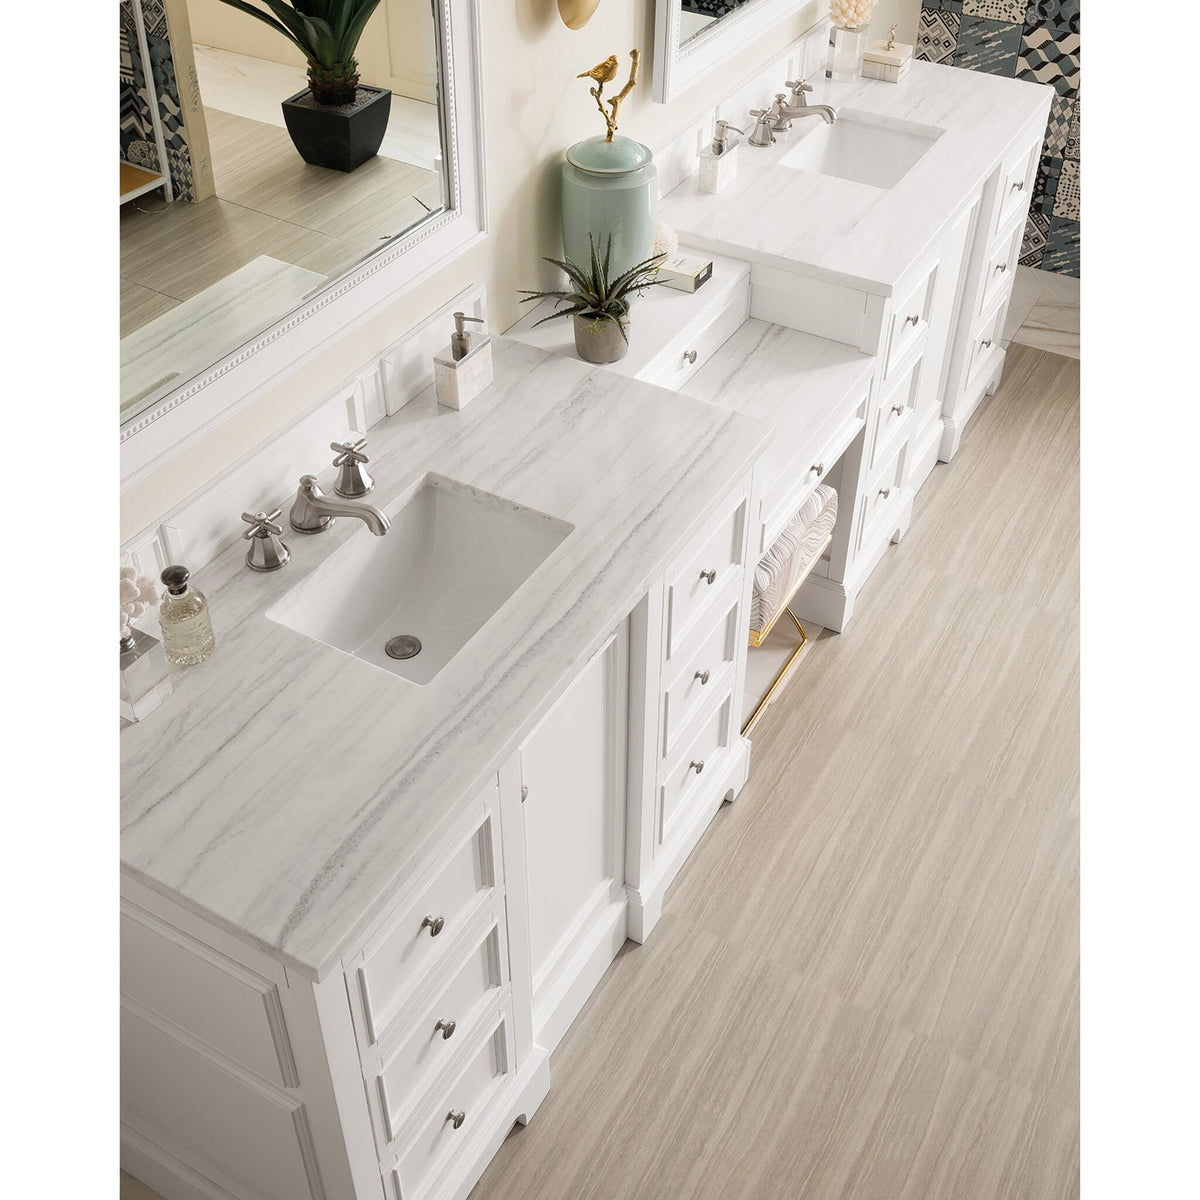 118" De Soto Double Bathroom Vanity with Makeup Counter, Bright White - vanitiesdepot.com